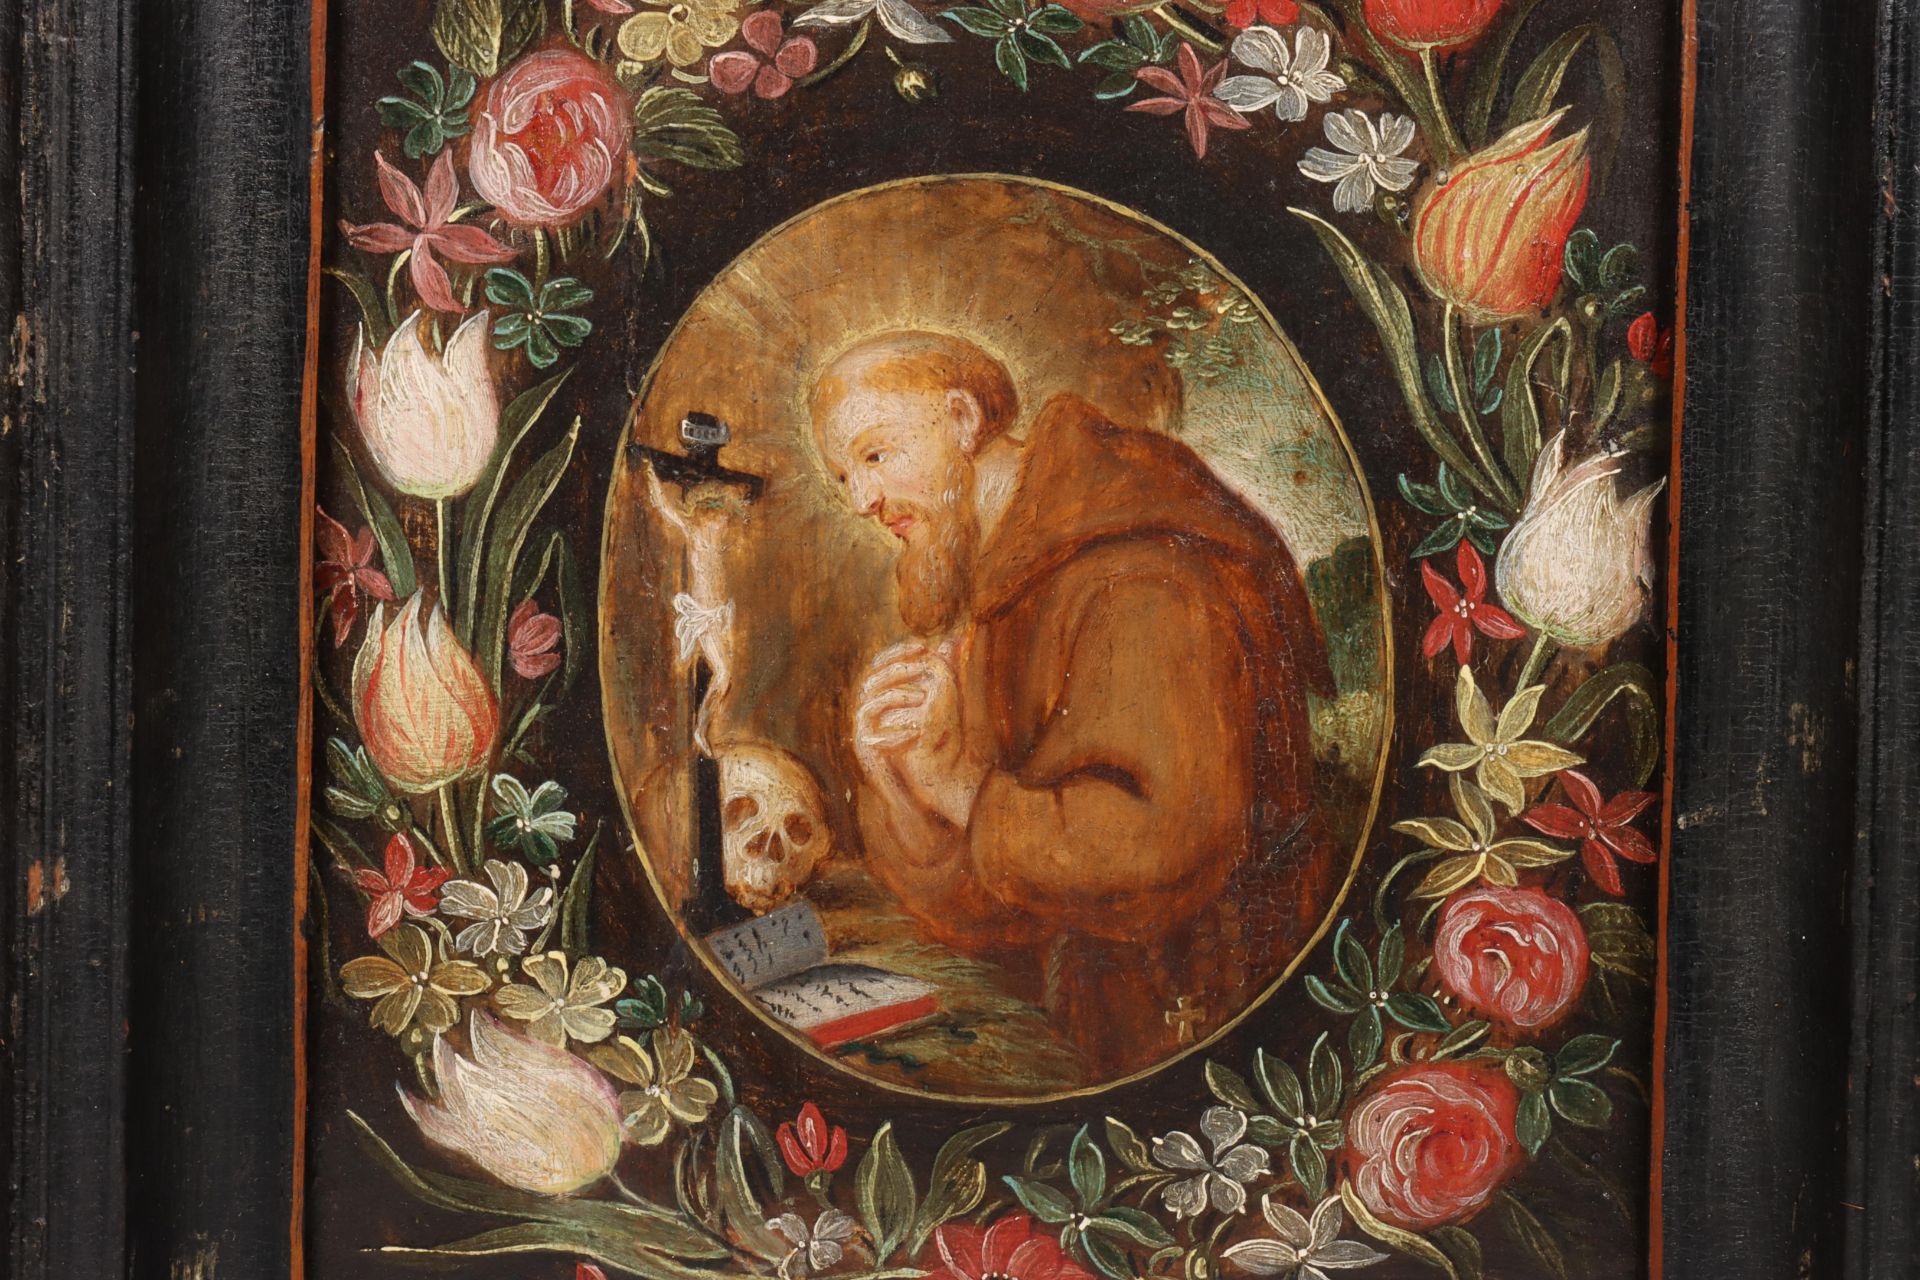 Religieuze schildering op paneel in 17e eeuwse trant; - Image 2 of 3